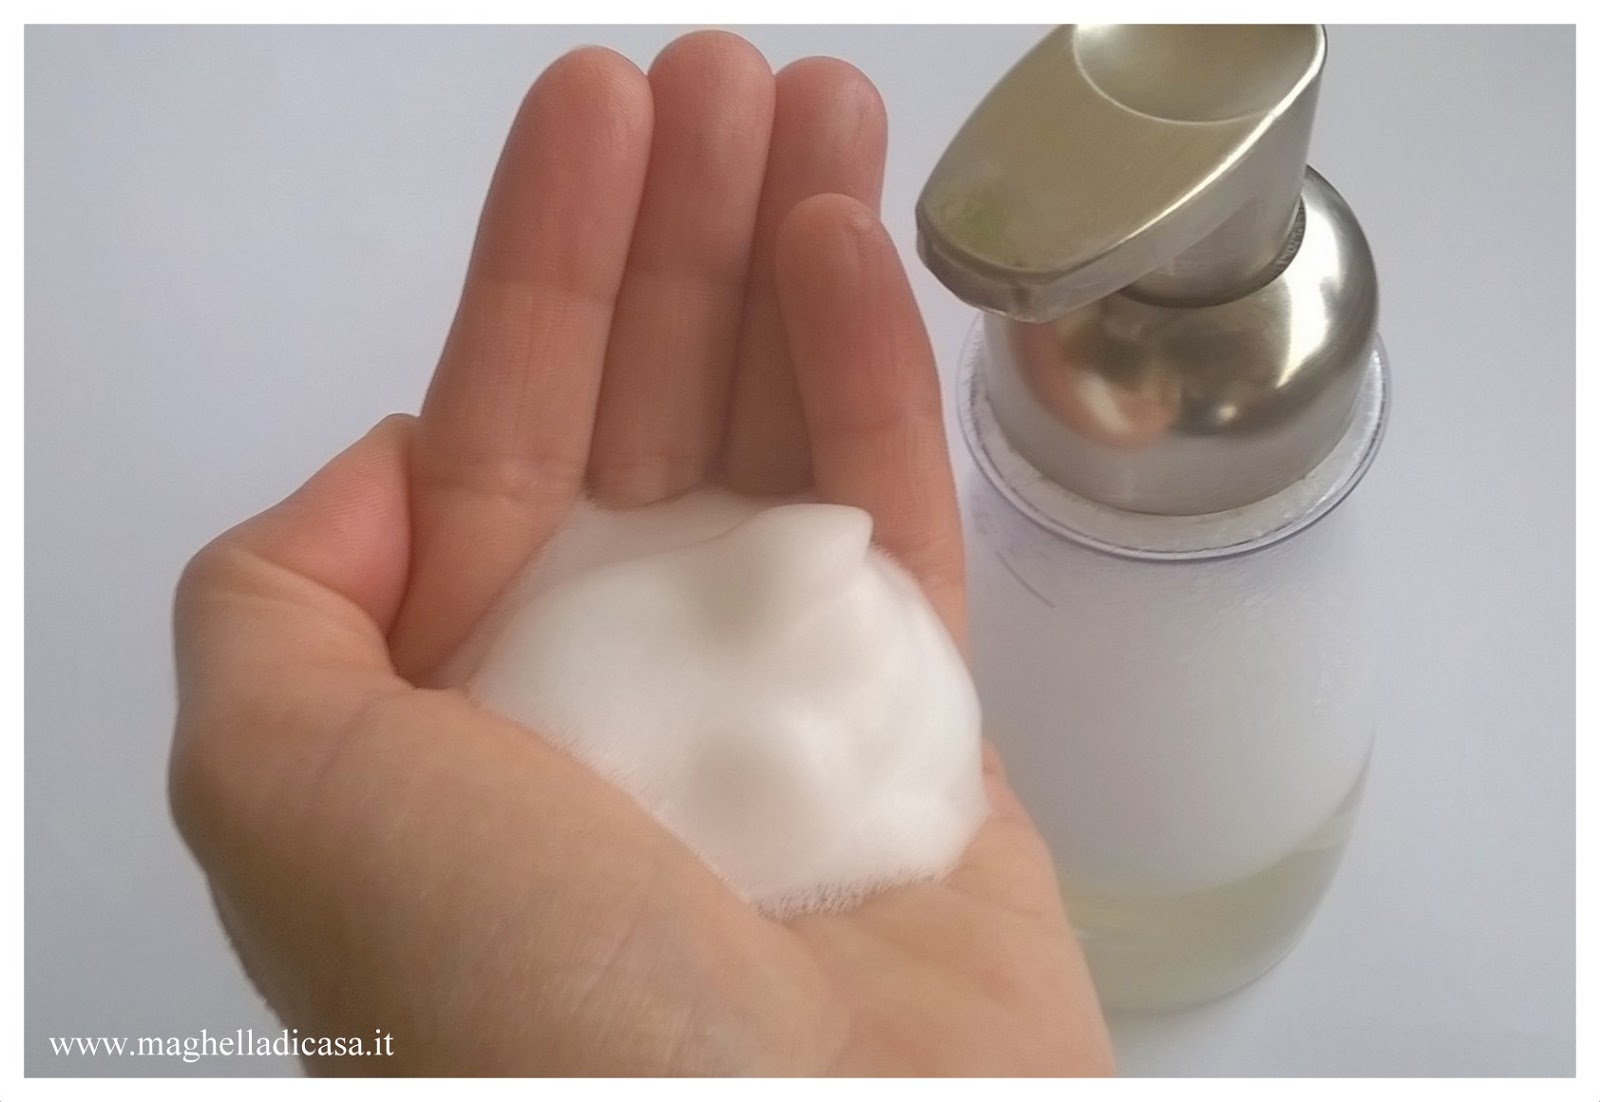 Maghella di casa : Schiuma sapone per le mani che non secca la pelle e ci  fa risparmiare